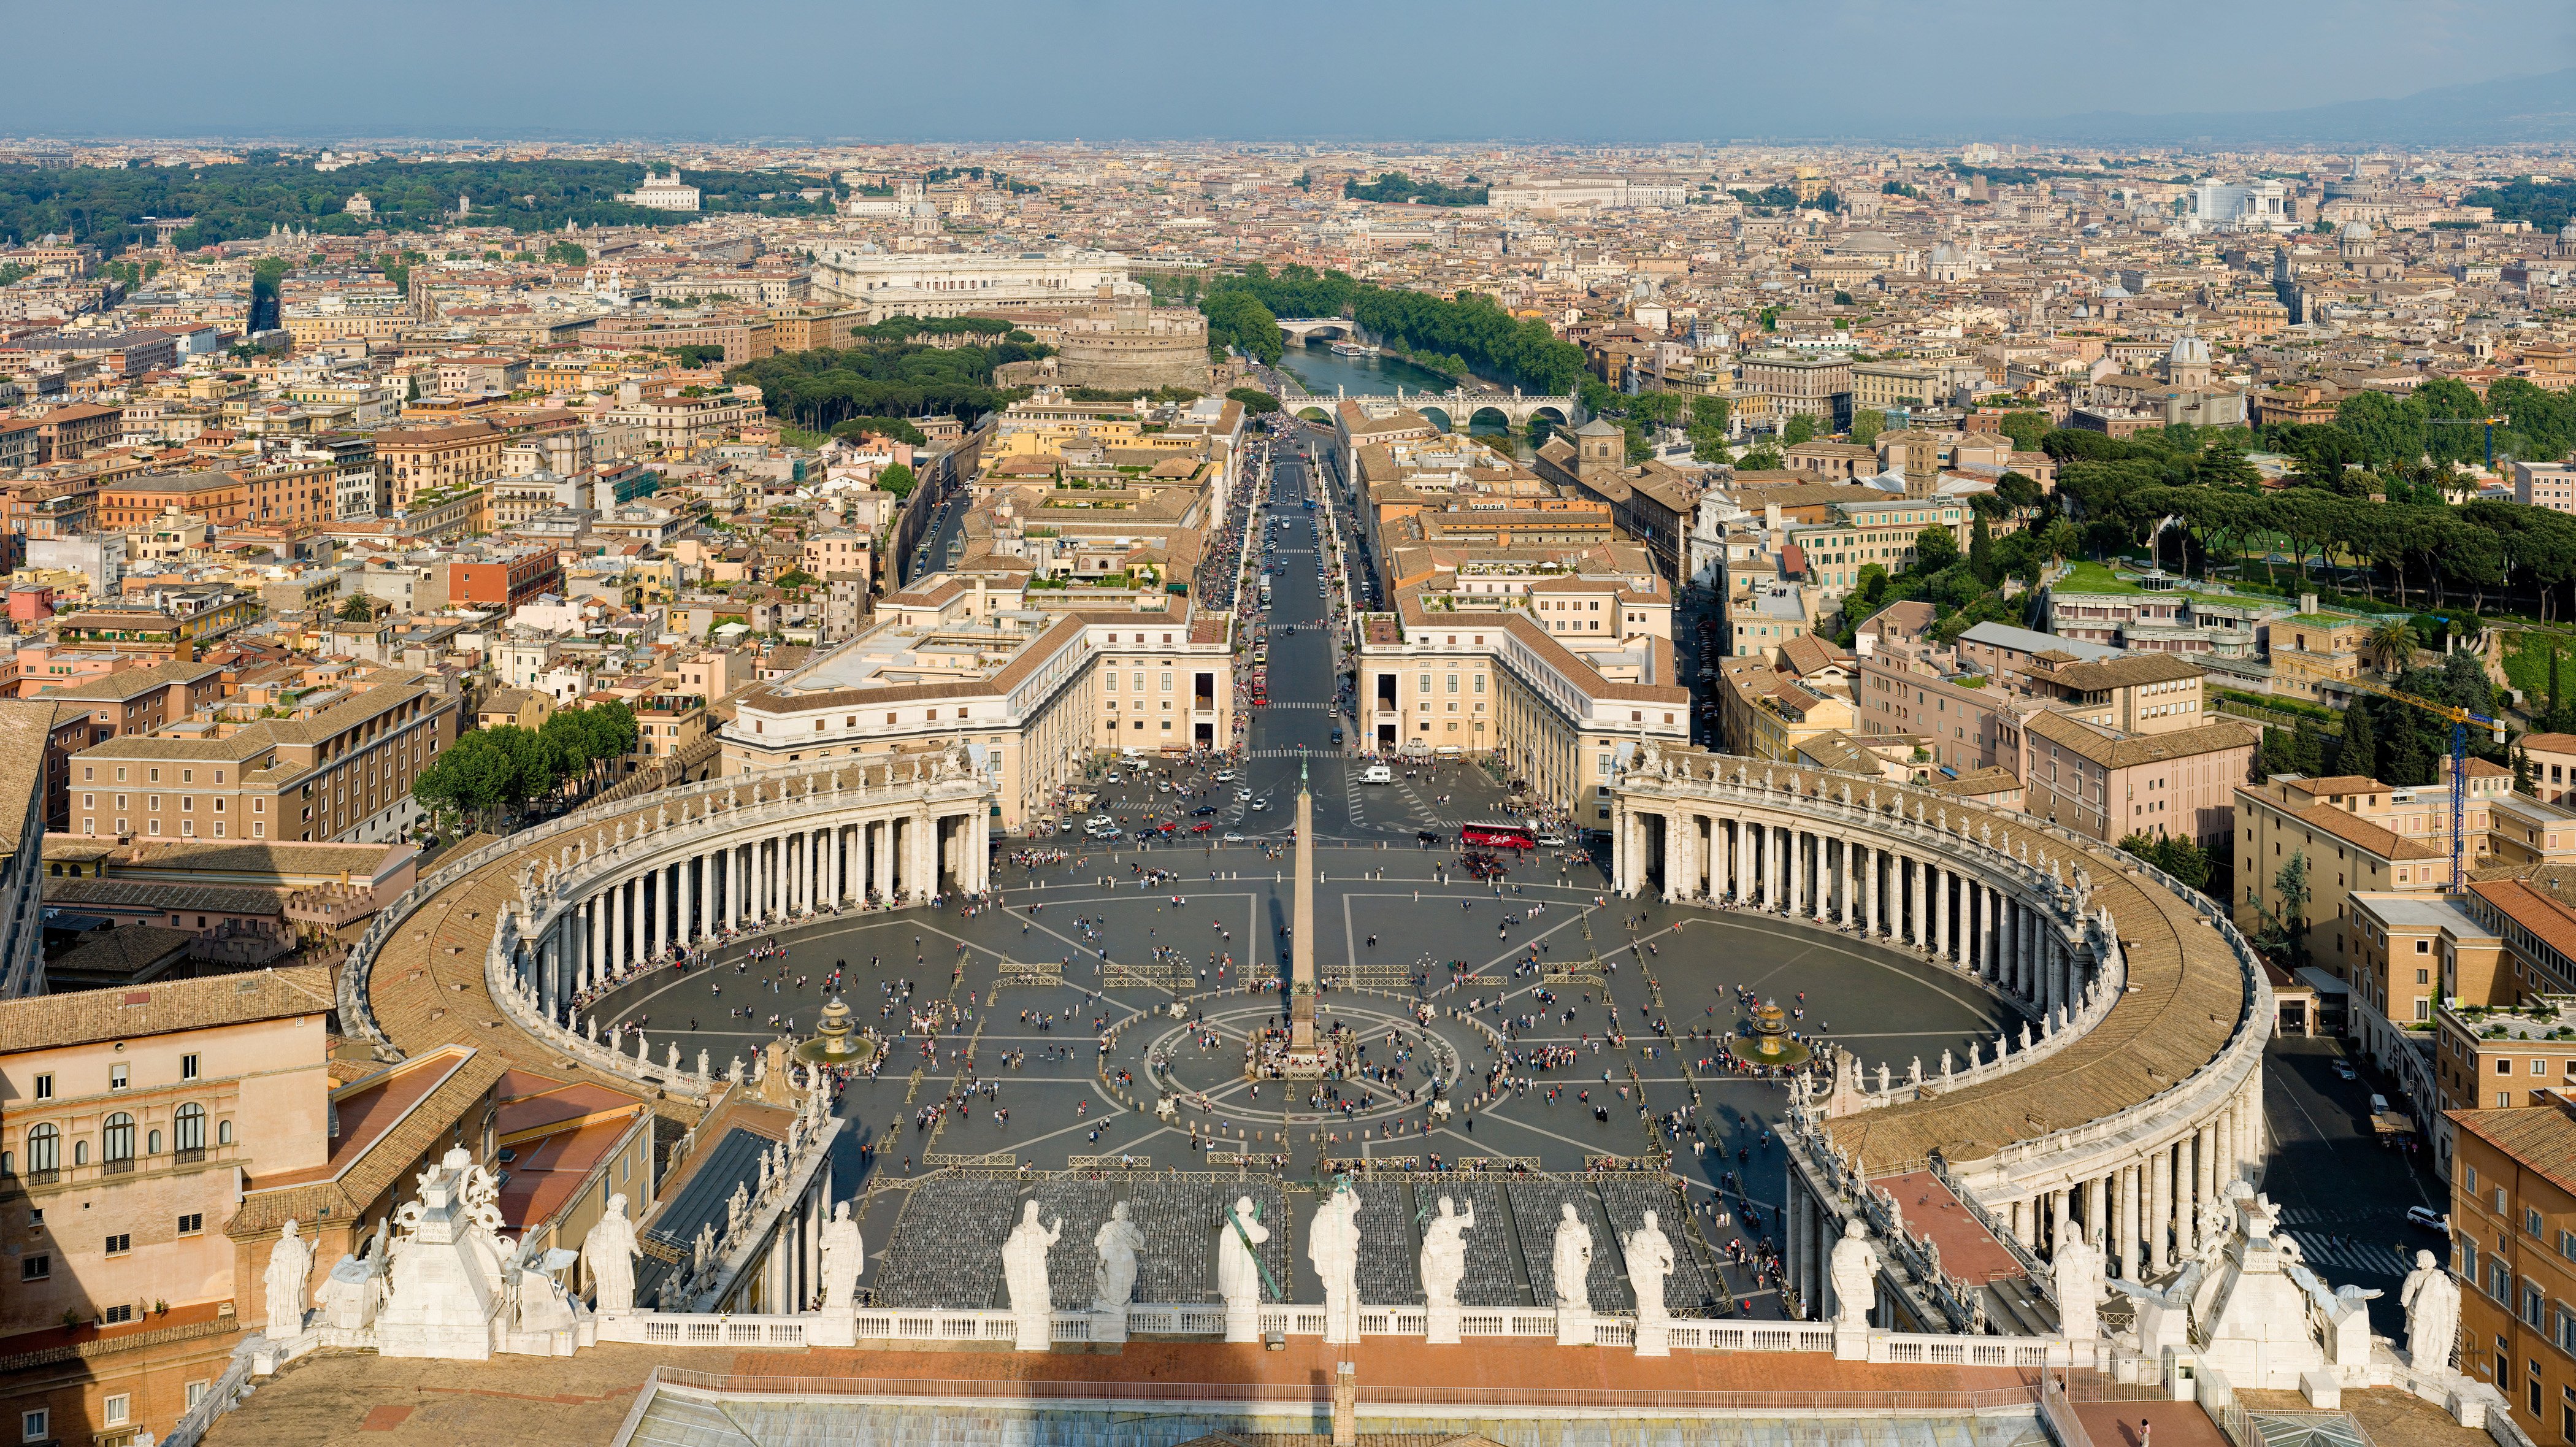 Cardenals i bisbes ja no podran viure gratis al Vaticà: el Papa començarà a cobrar lloguer